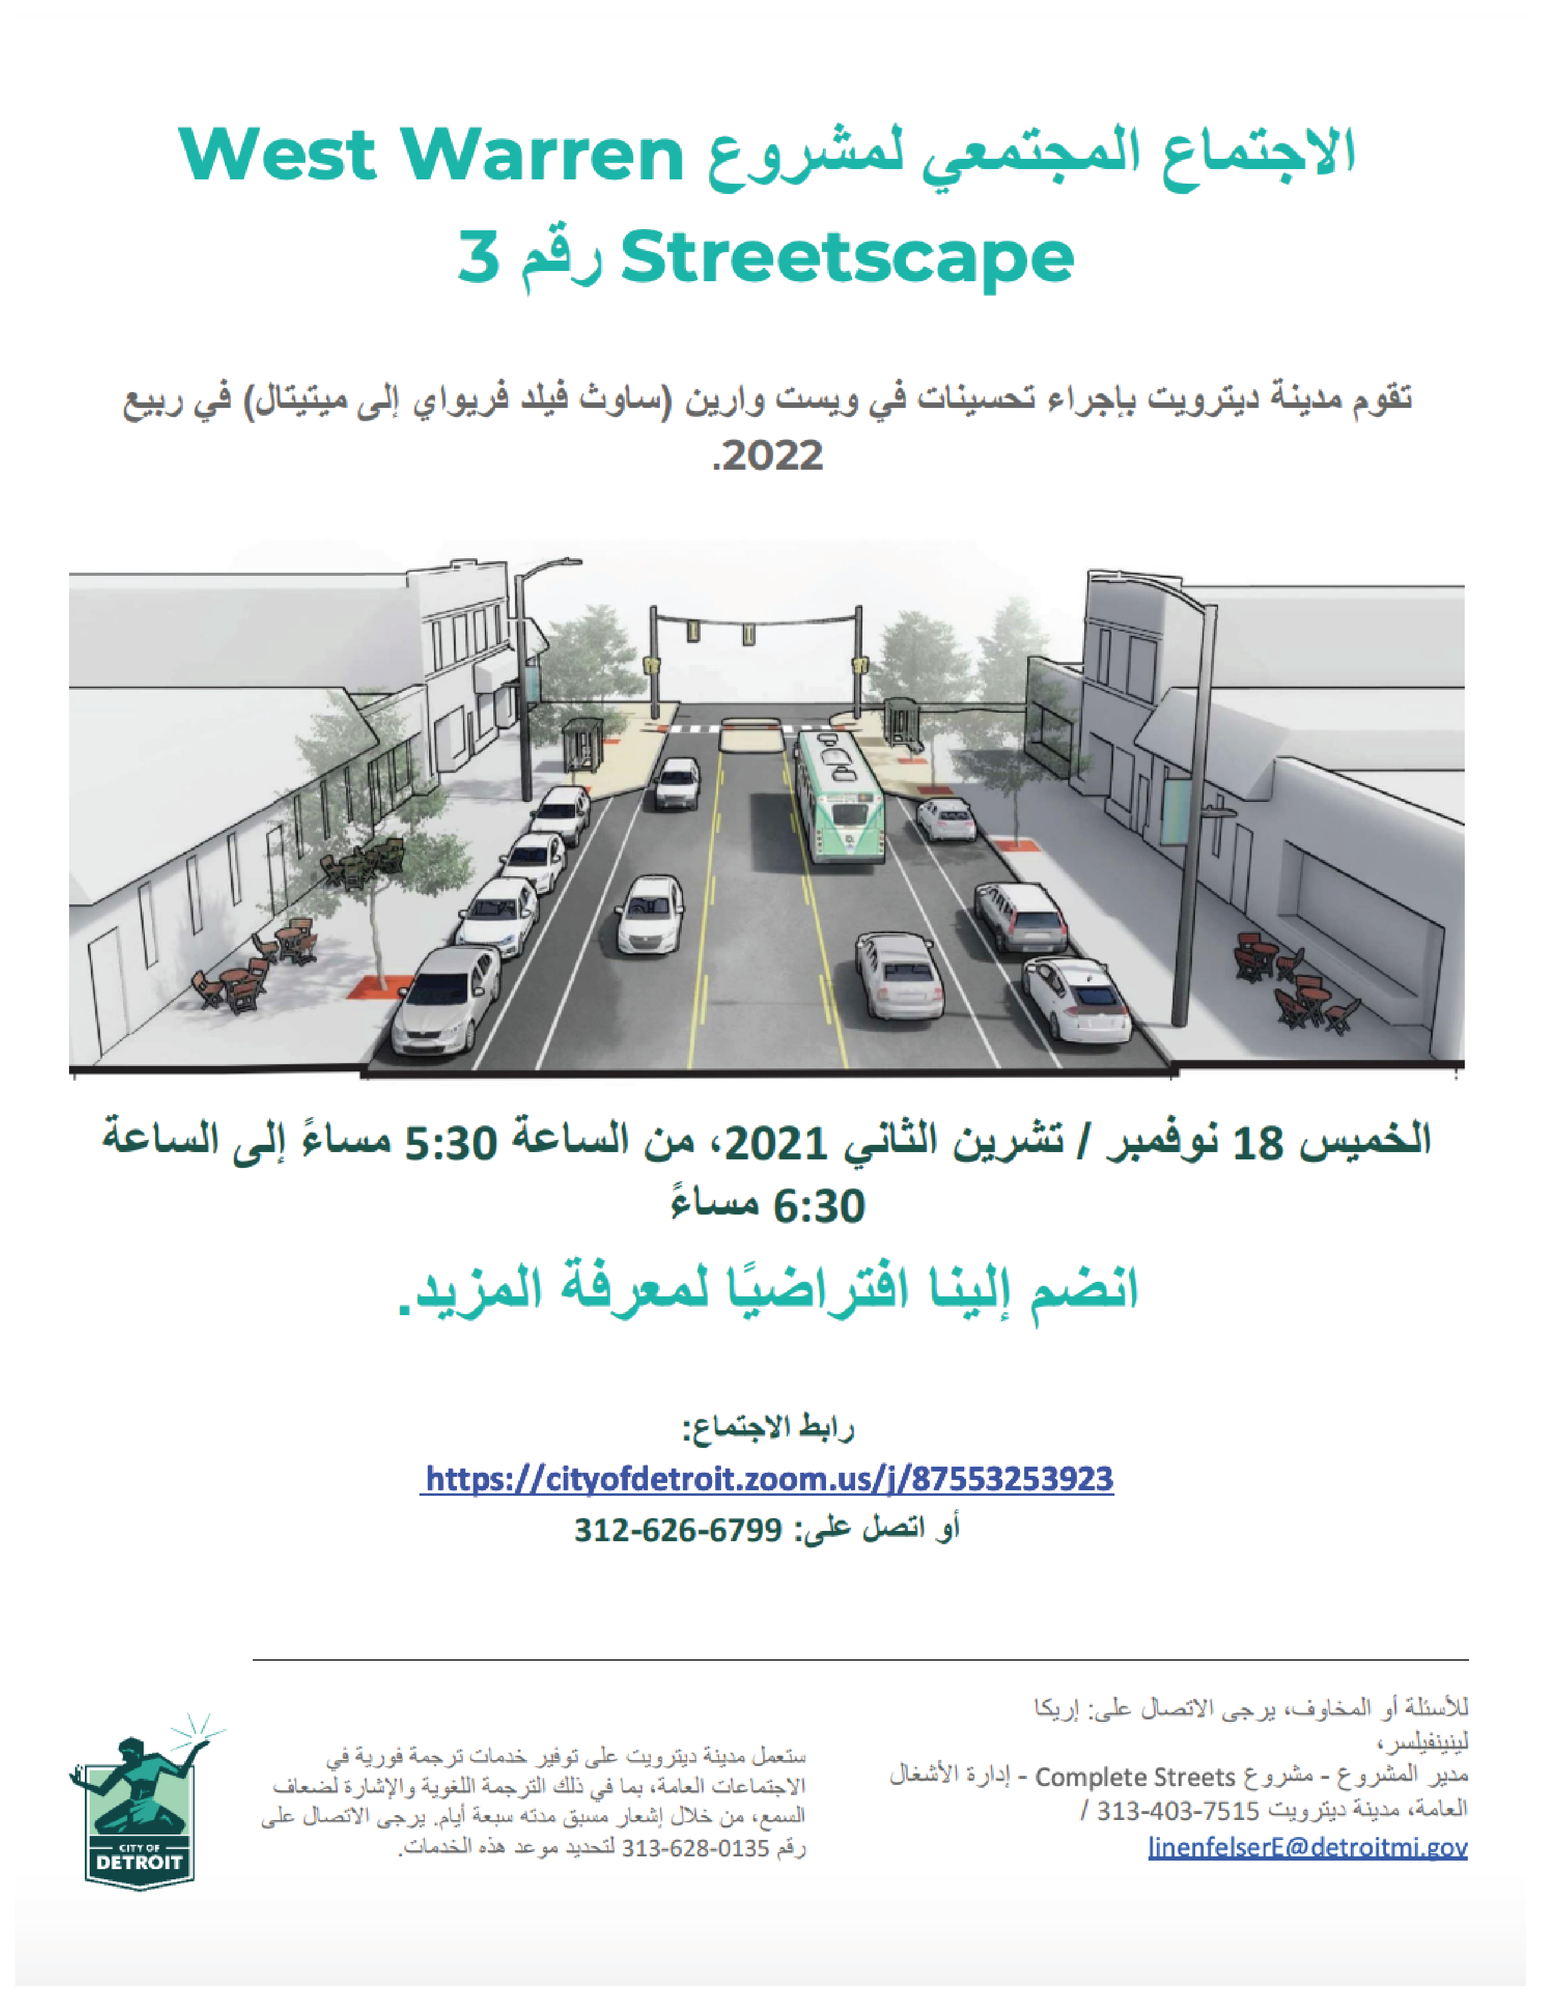 West Warren Streetscape Project (Arabic)